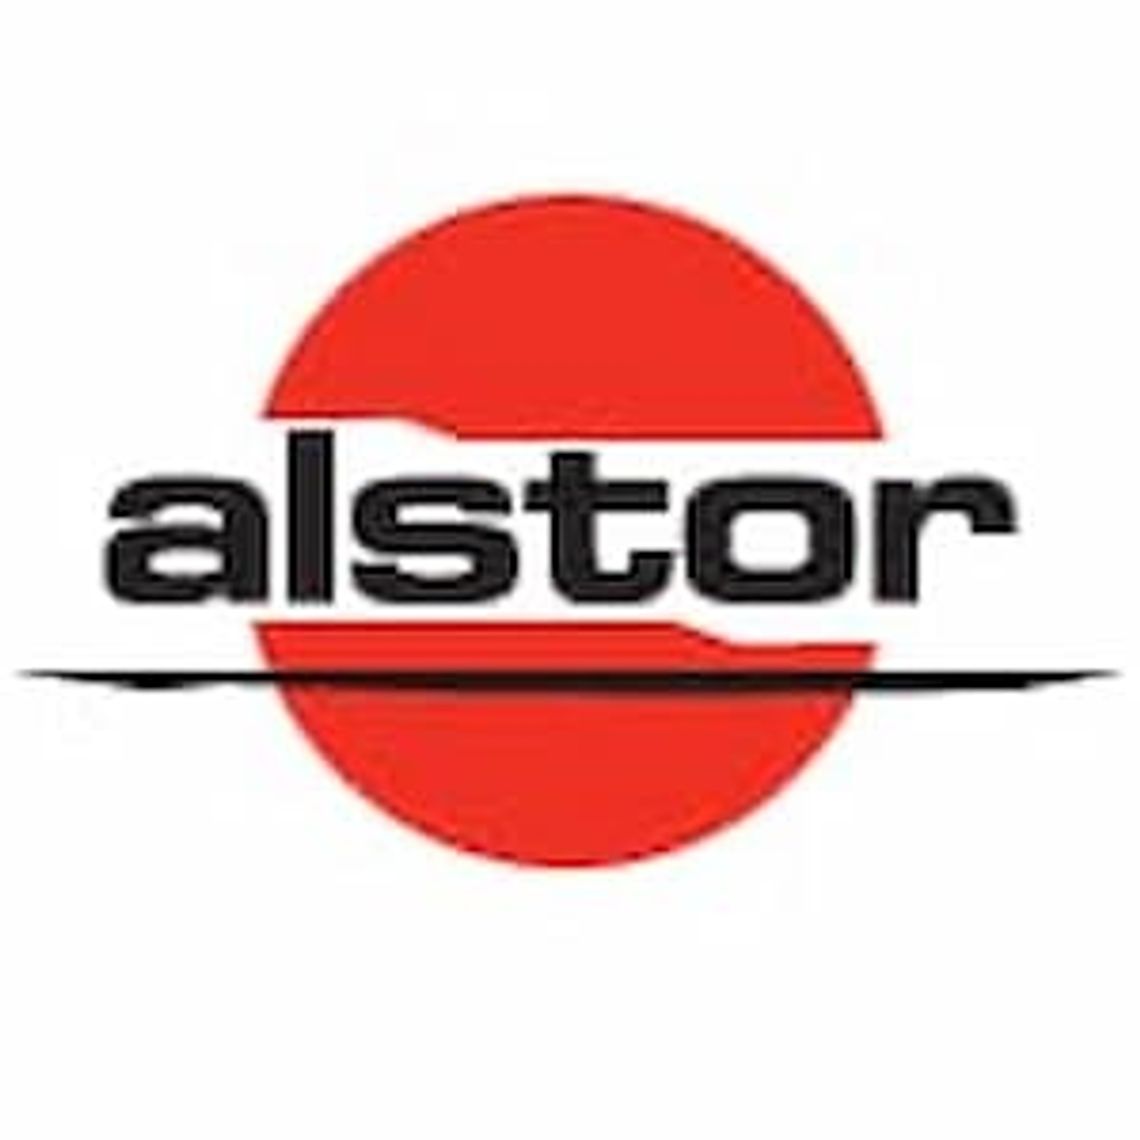 Najlepszy dystrybutor it - alstor.pl